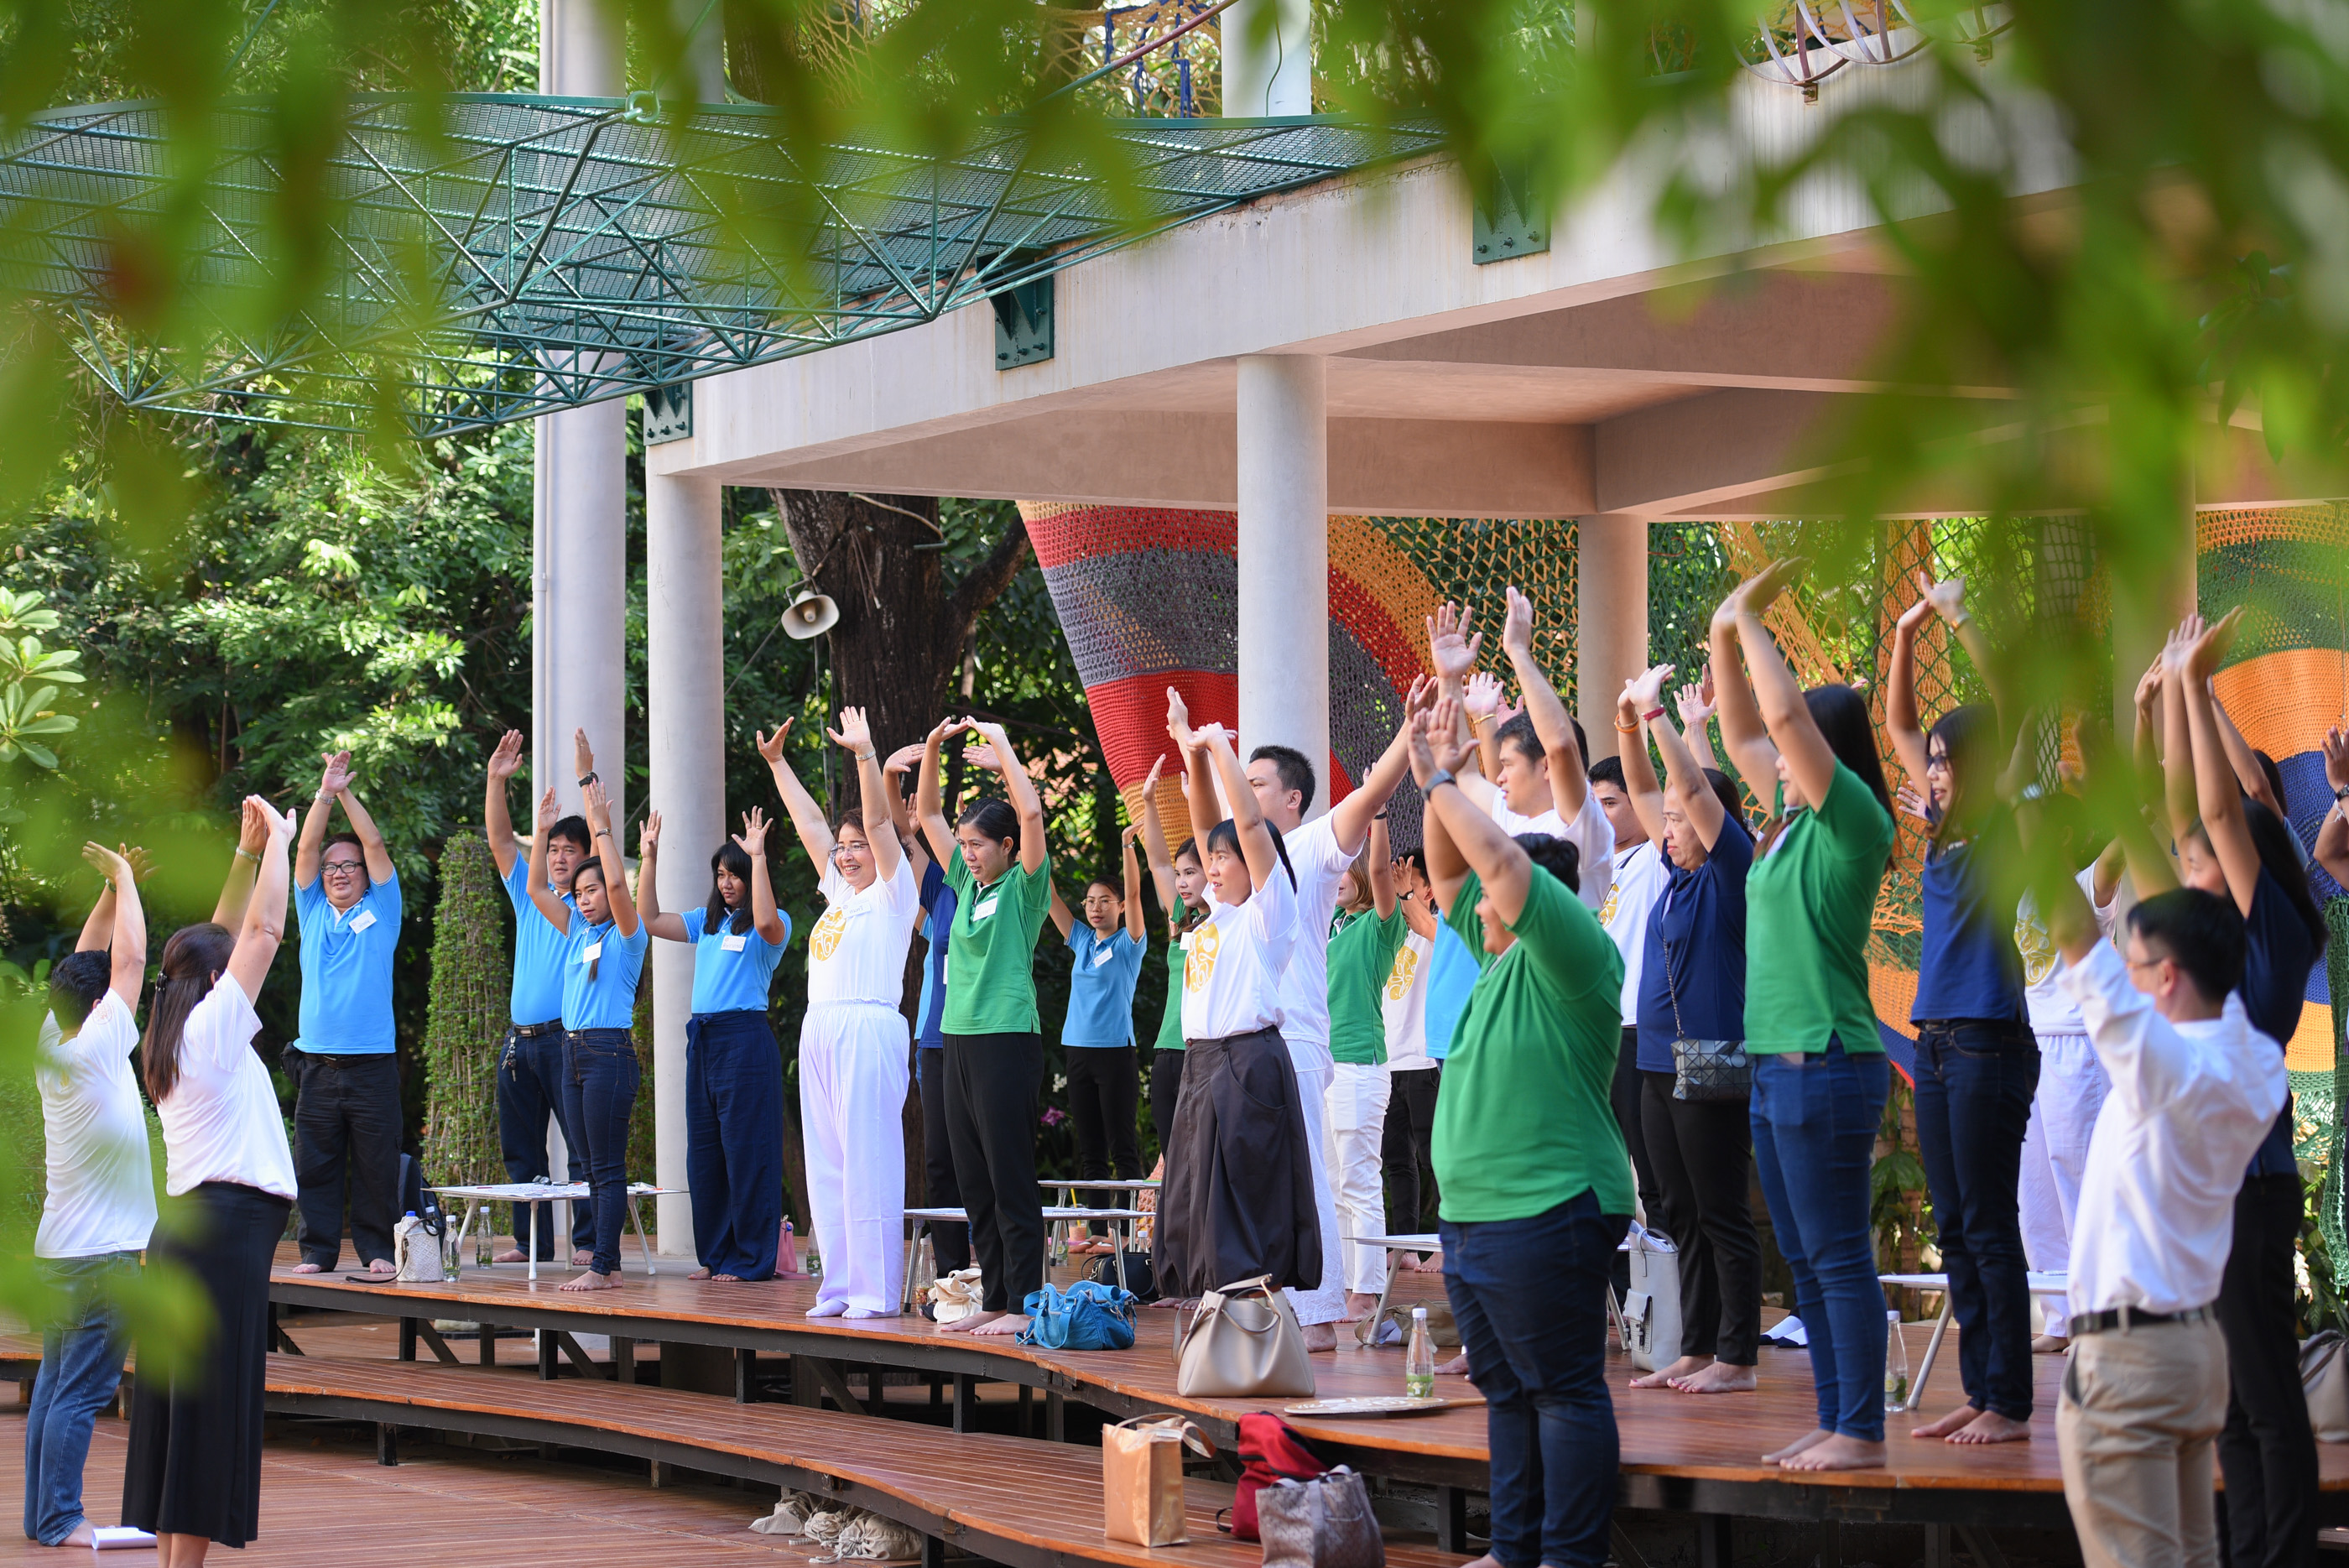 'สติ' เป็นเครื่องมือสร้างสุขในองค์กร thaihealth